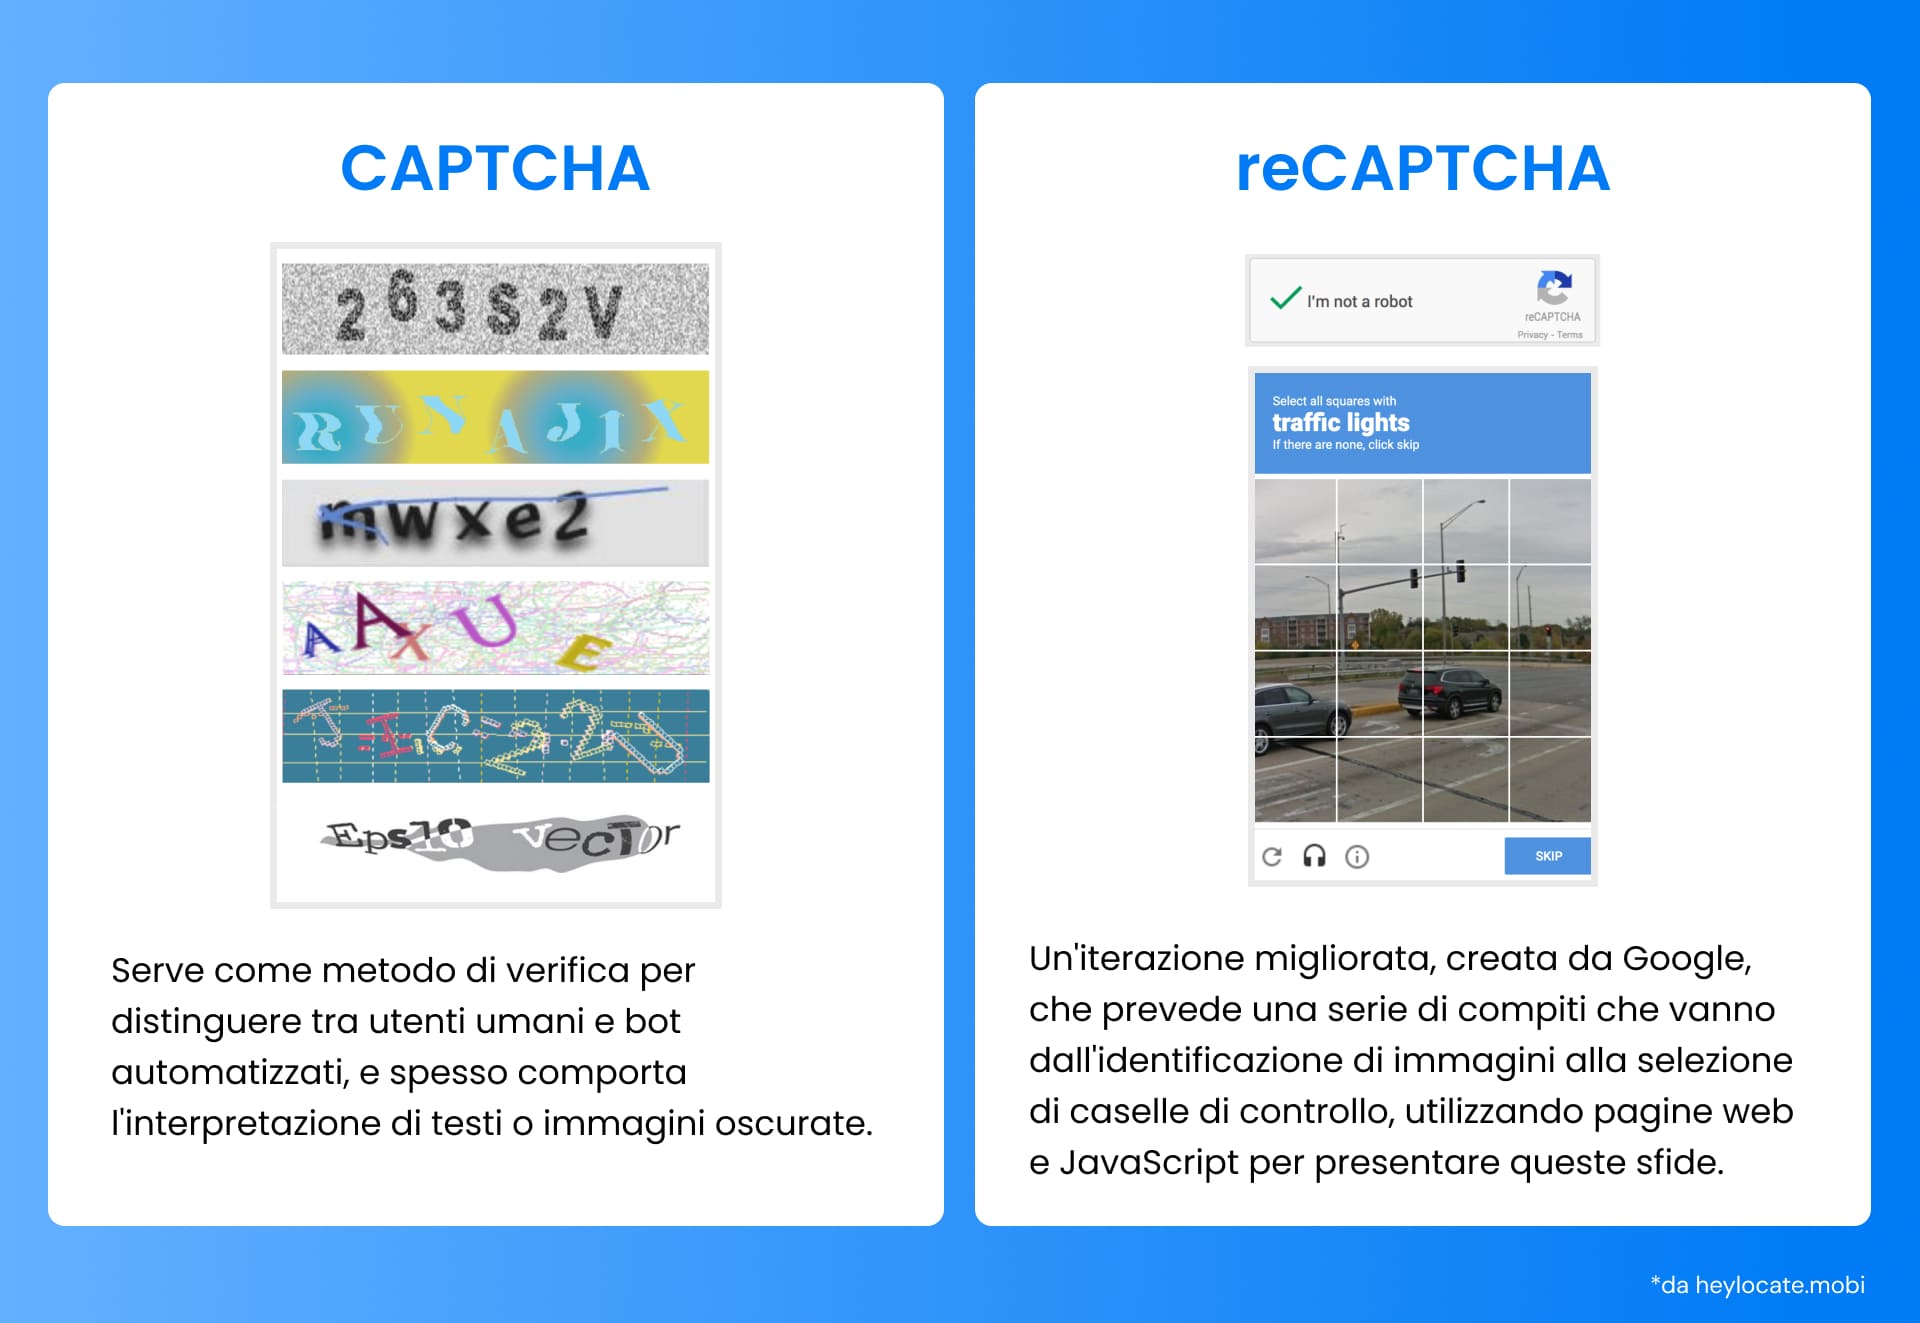 Un'immagine di due tipi di controlli di sicurezza su Internet: A sinistra c'è CAPTCHA, che utilizza un testo confuso per verificare un utente e distinguere un umano da un bot. A destra c'è reCAPTCHA, una versione più avanzata di Google che include compiti come il riconoscimento delle immagini e la selezione di caselle di controllo per assicurarsi che l'utente non sia un robot